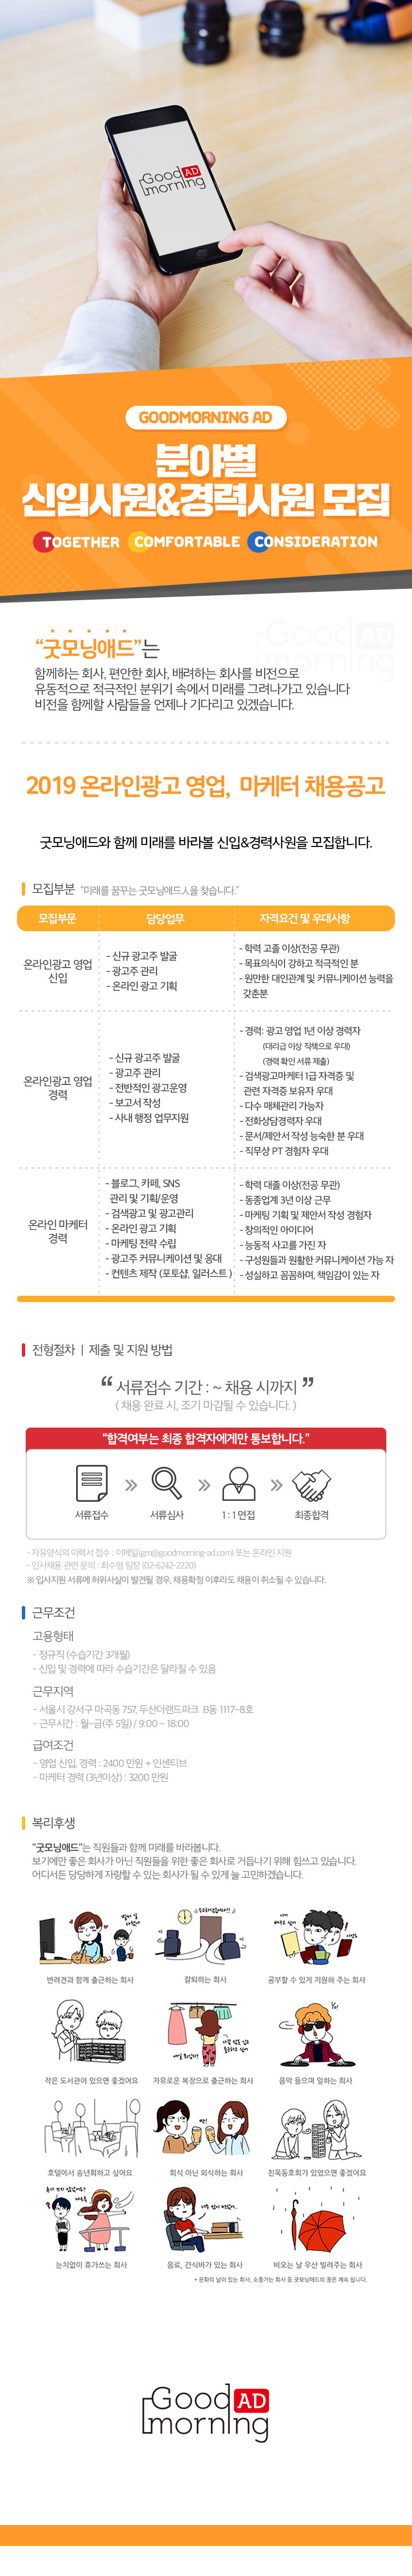 2019 온라인광고 영업/디자이너/광고관리 채용